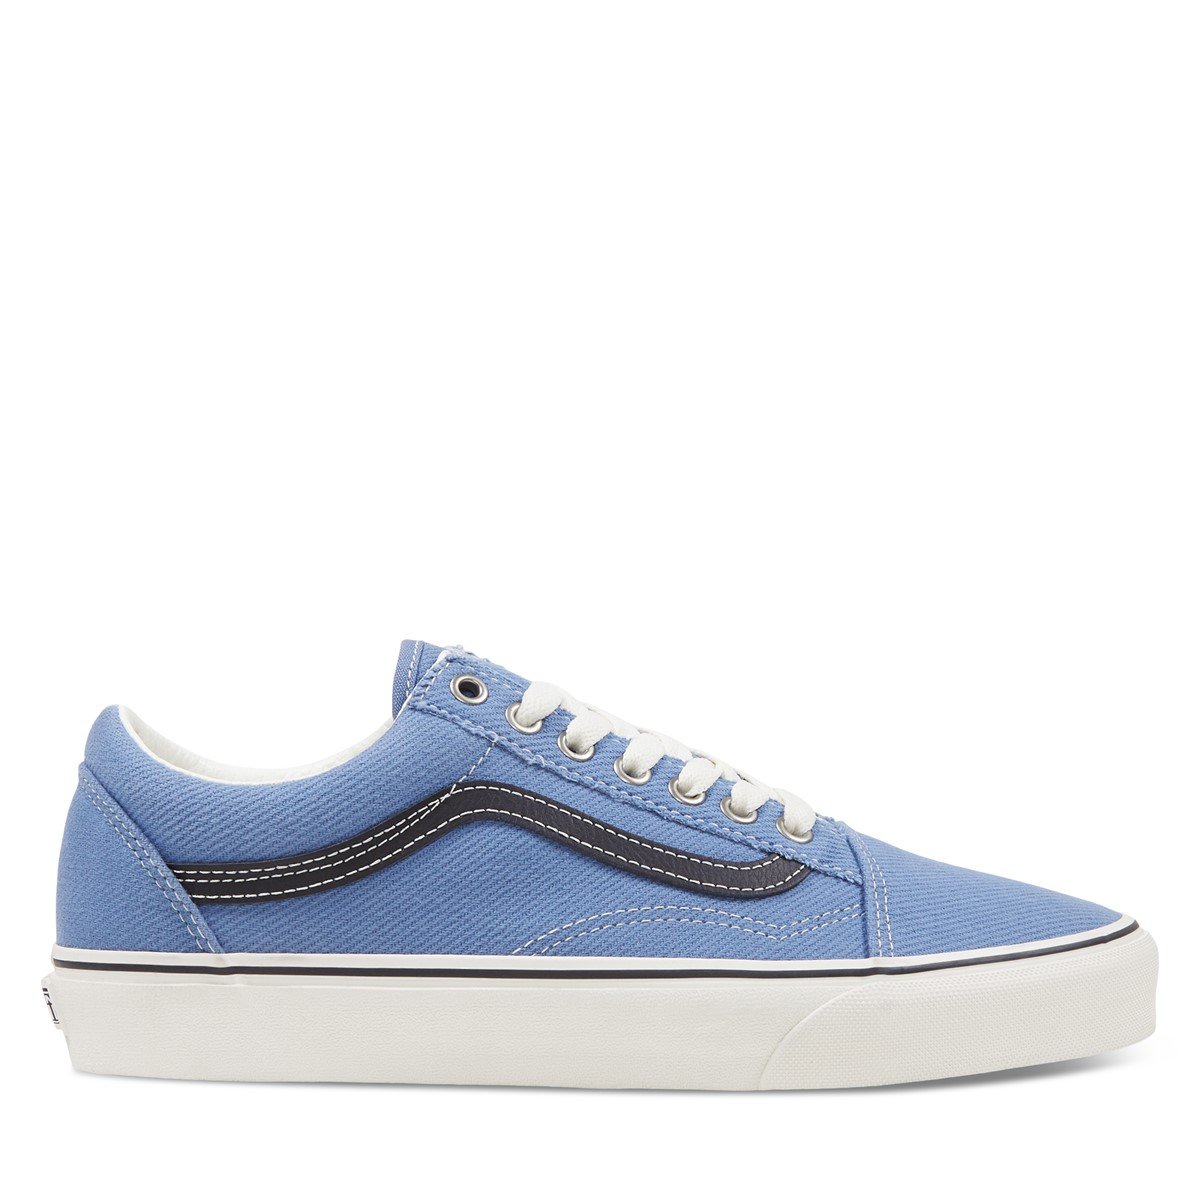 light blue vans shoes